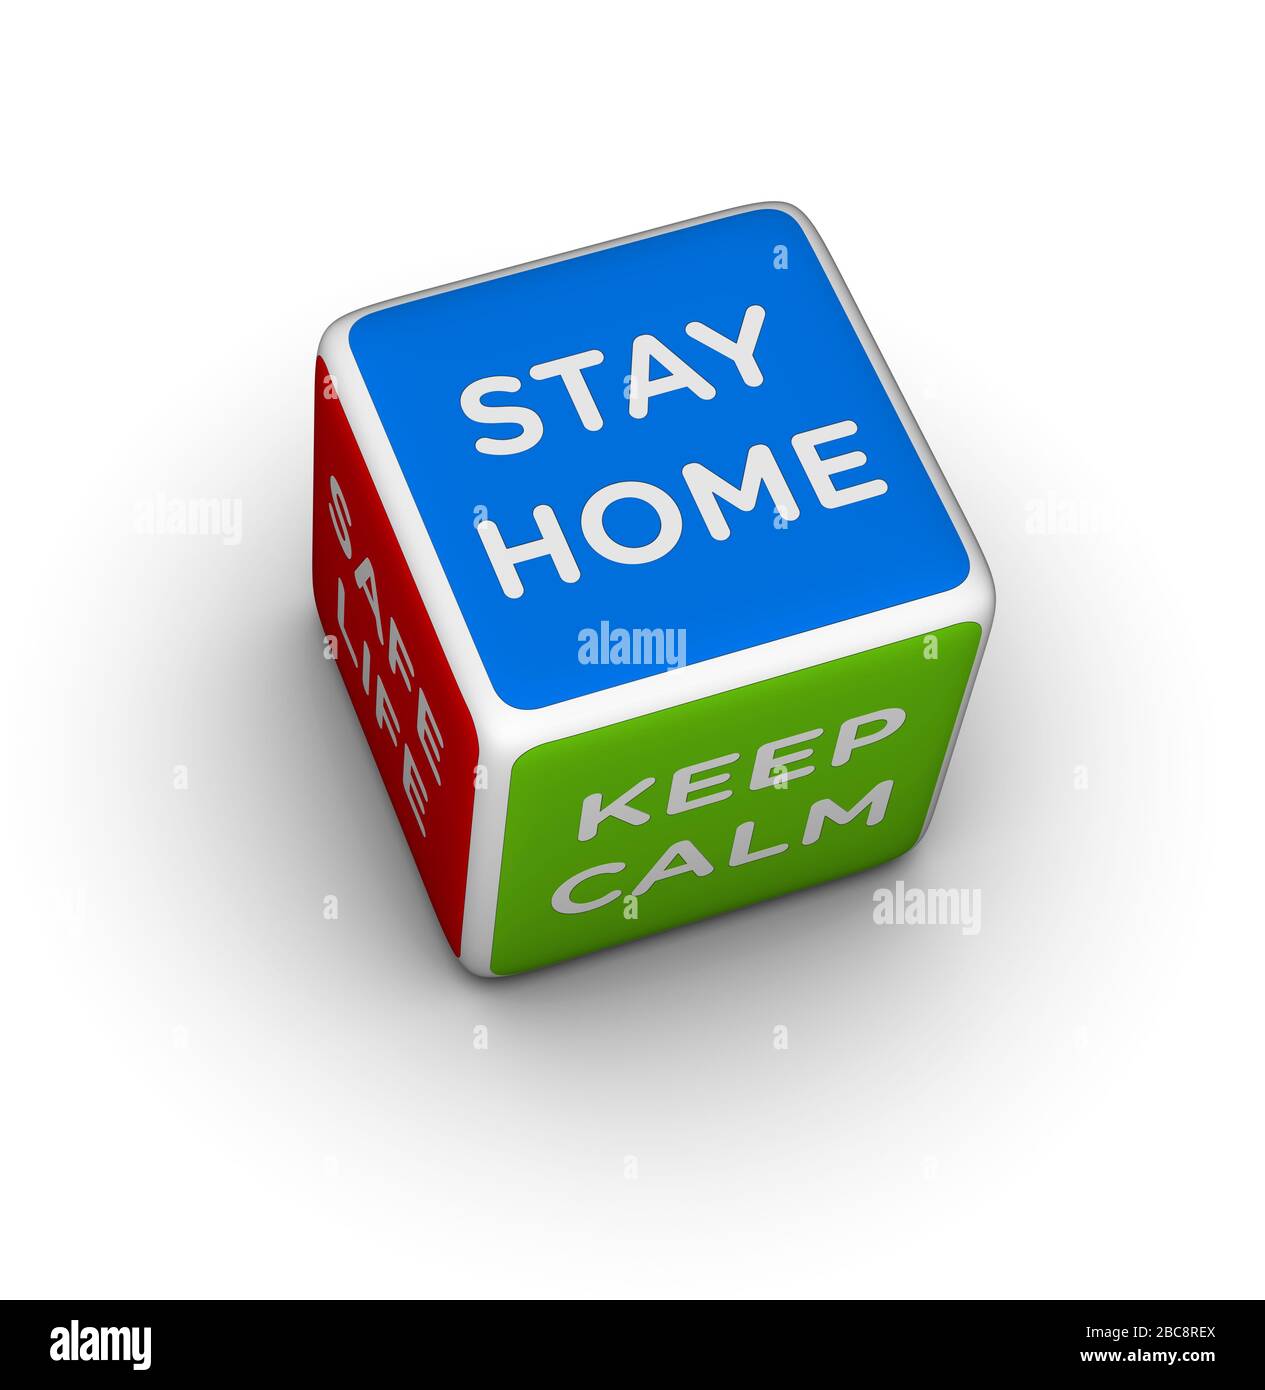 Cueste con señales de "Stay Home", "Keep Calm and Safe Life". Imagen 3D sobre fondo blanco. Foto de stock